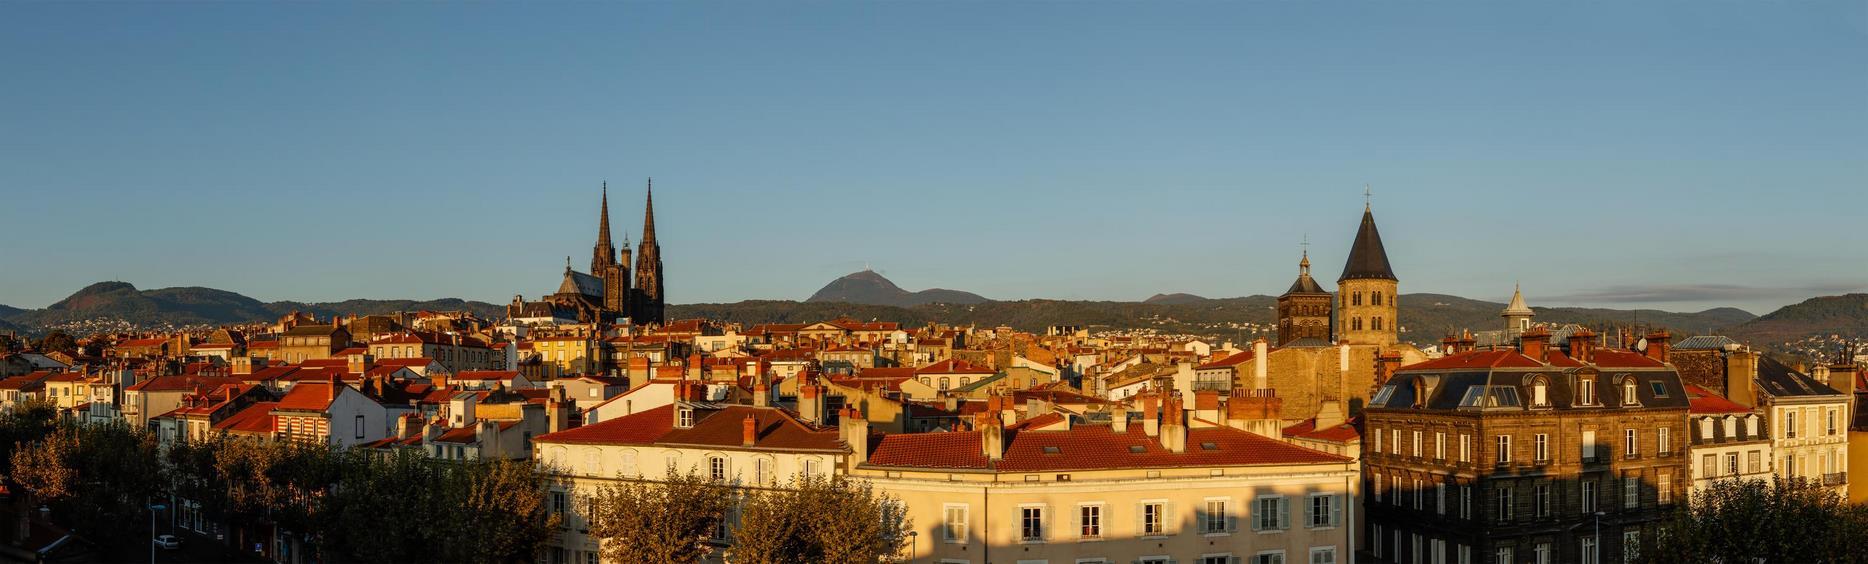 Clermont Ferrand, prefecture du Puy de dôme